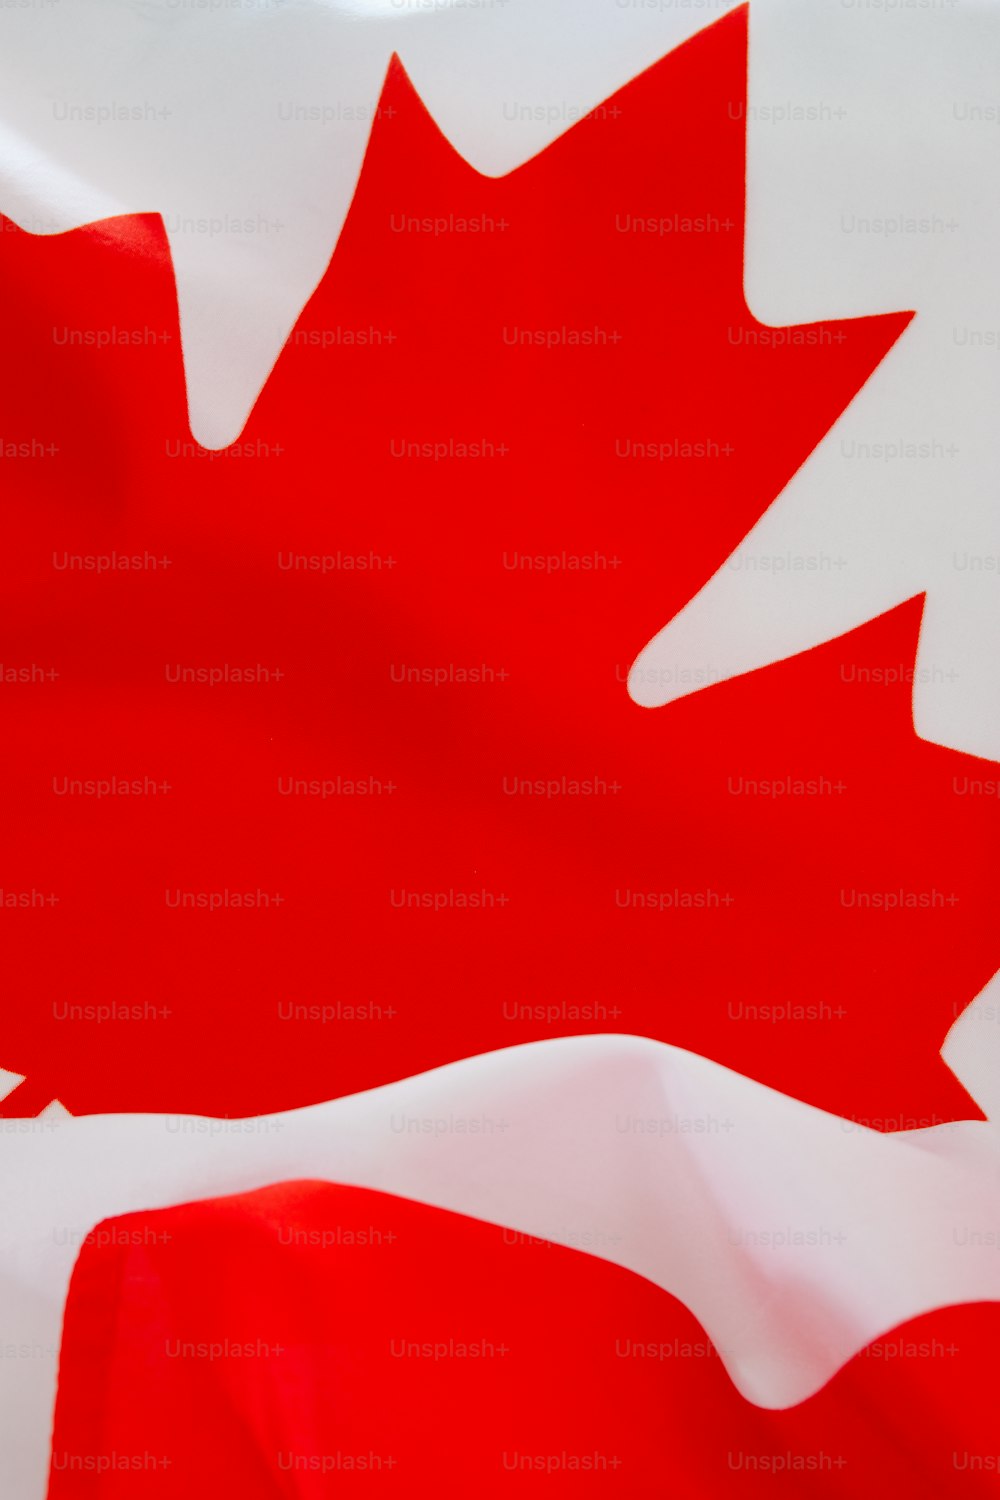 빨간 단풍잎이 달린 캐나다 국기